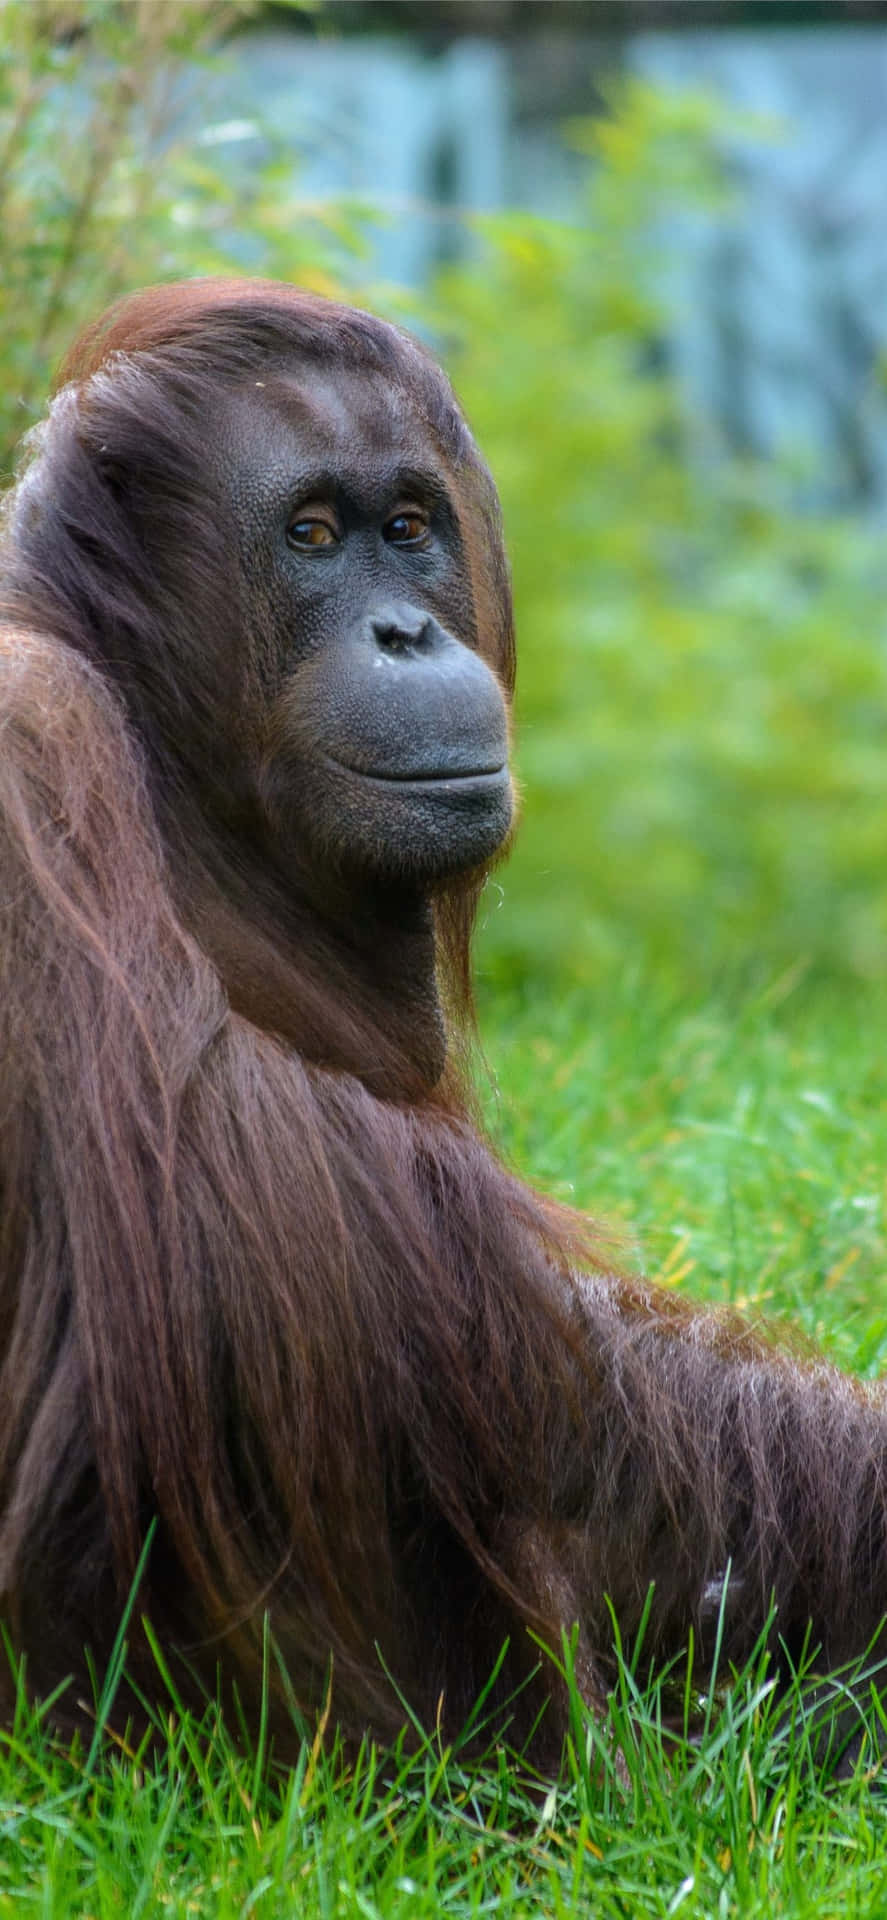 Great Ape In Nature Orangutan Wallpaper